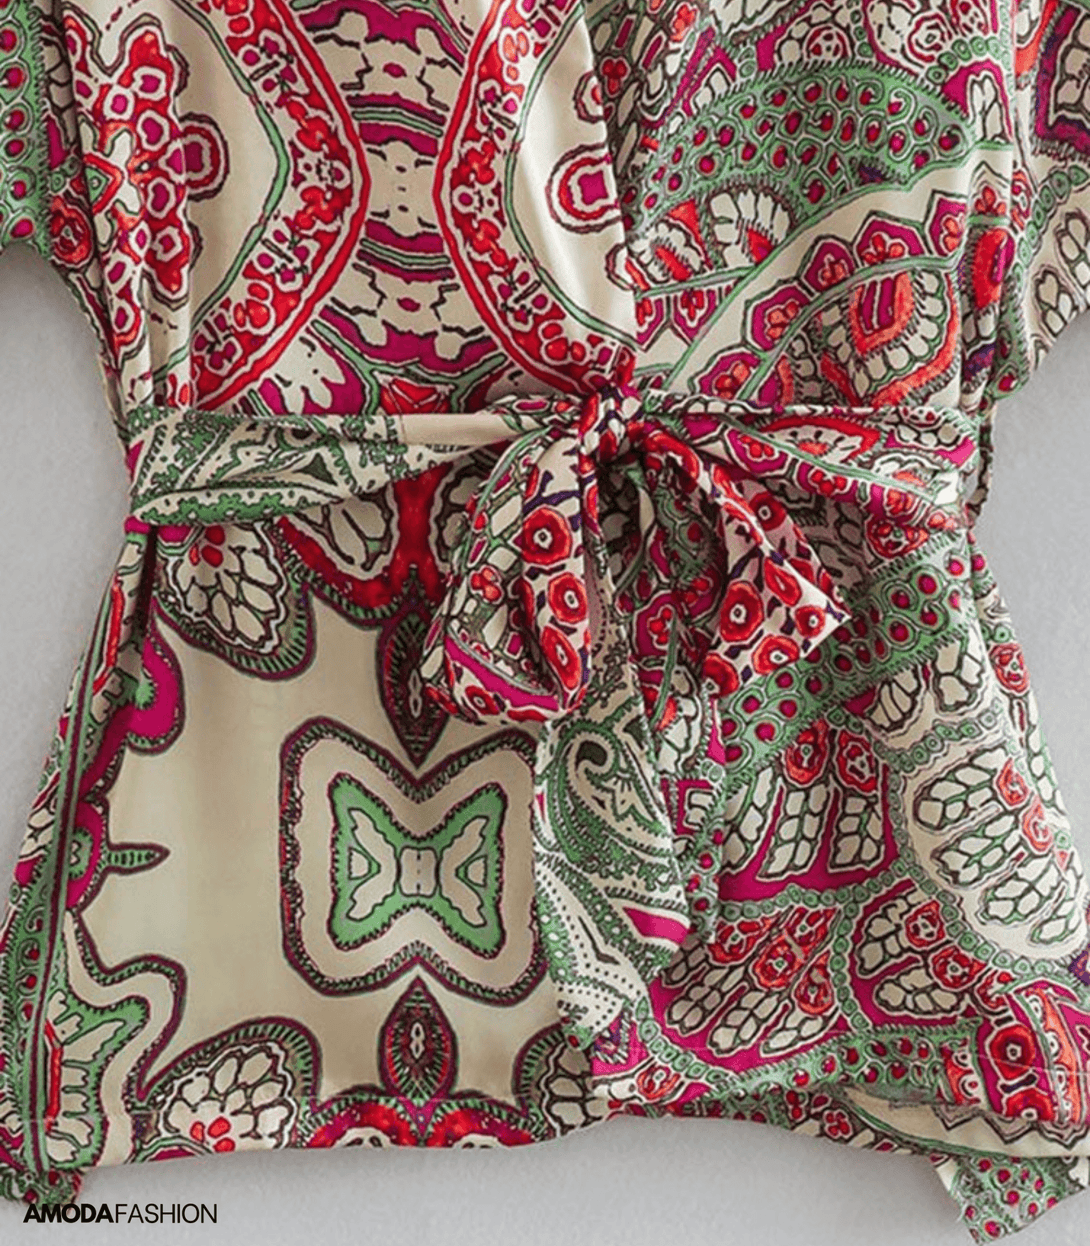 Jacke und Hose mit Kimonodruck - Amodafashion.de